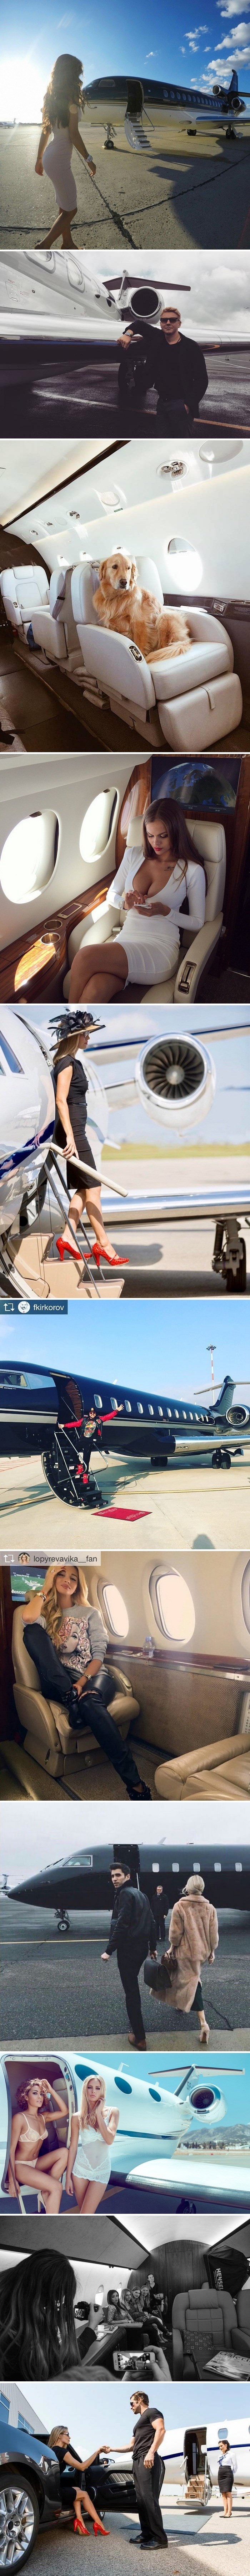 Ruska tvrtka iznajmljuje privatni avion kako bi se klijenti mogli hvaliti na Instagramu